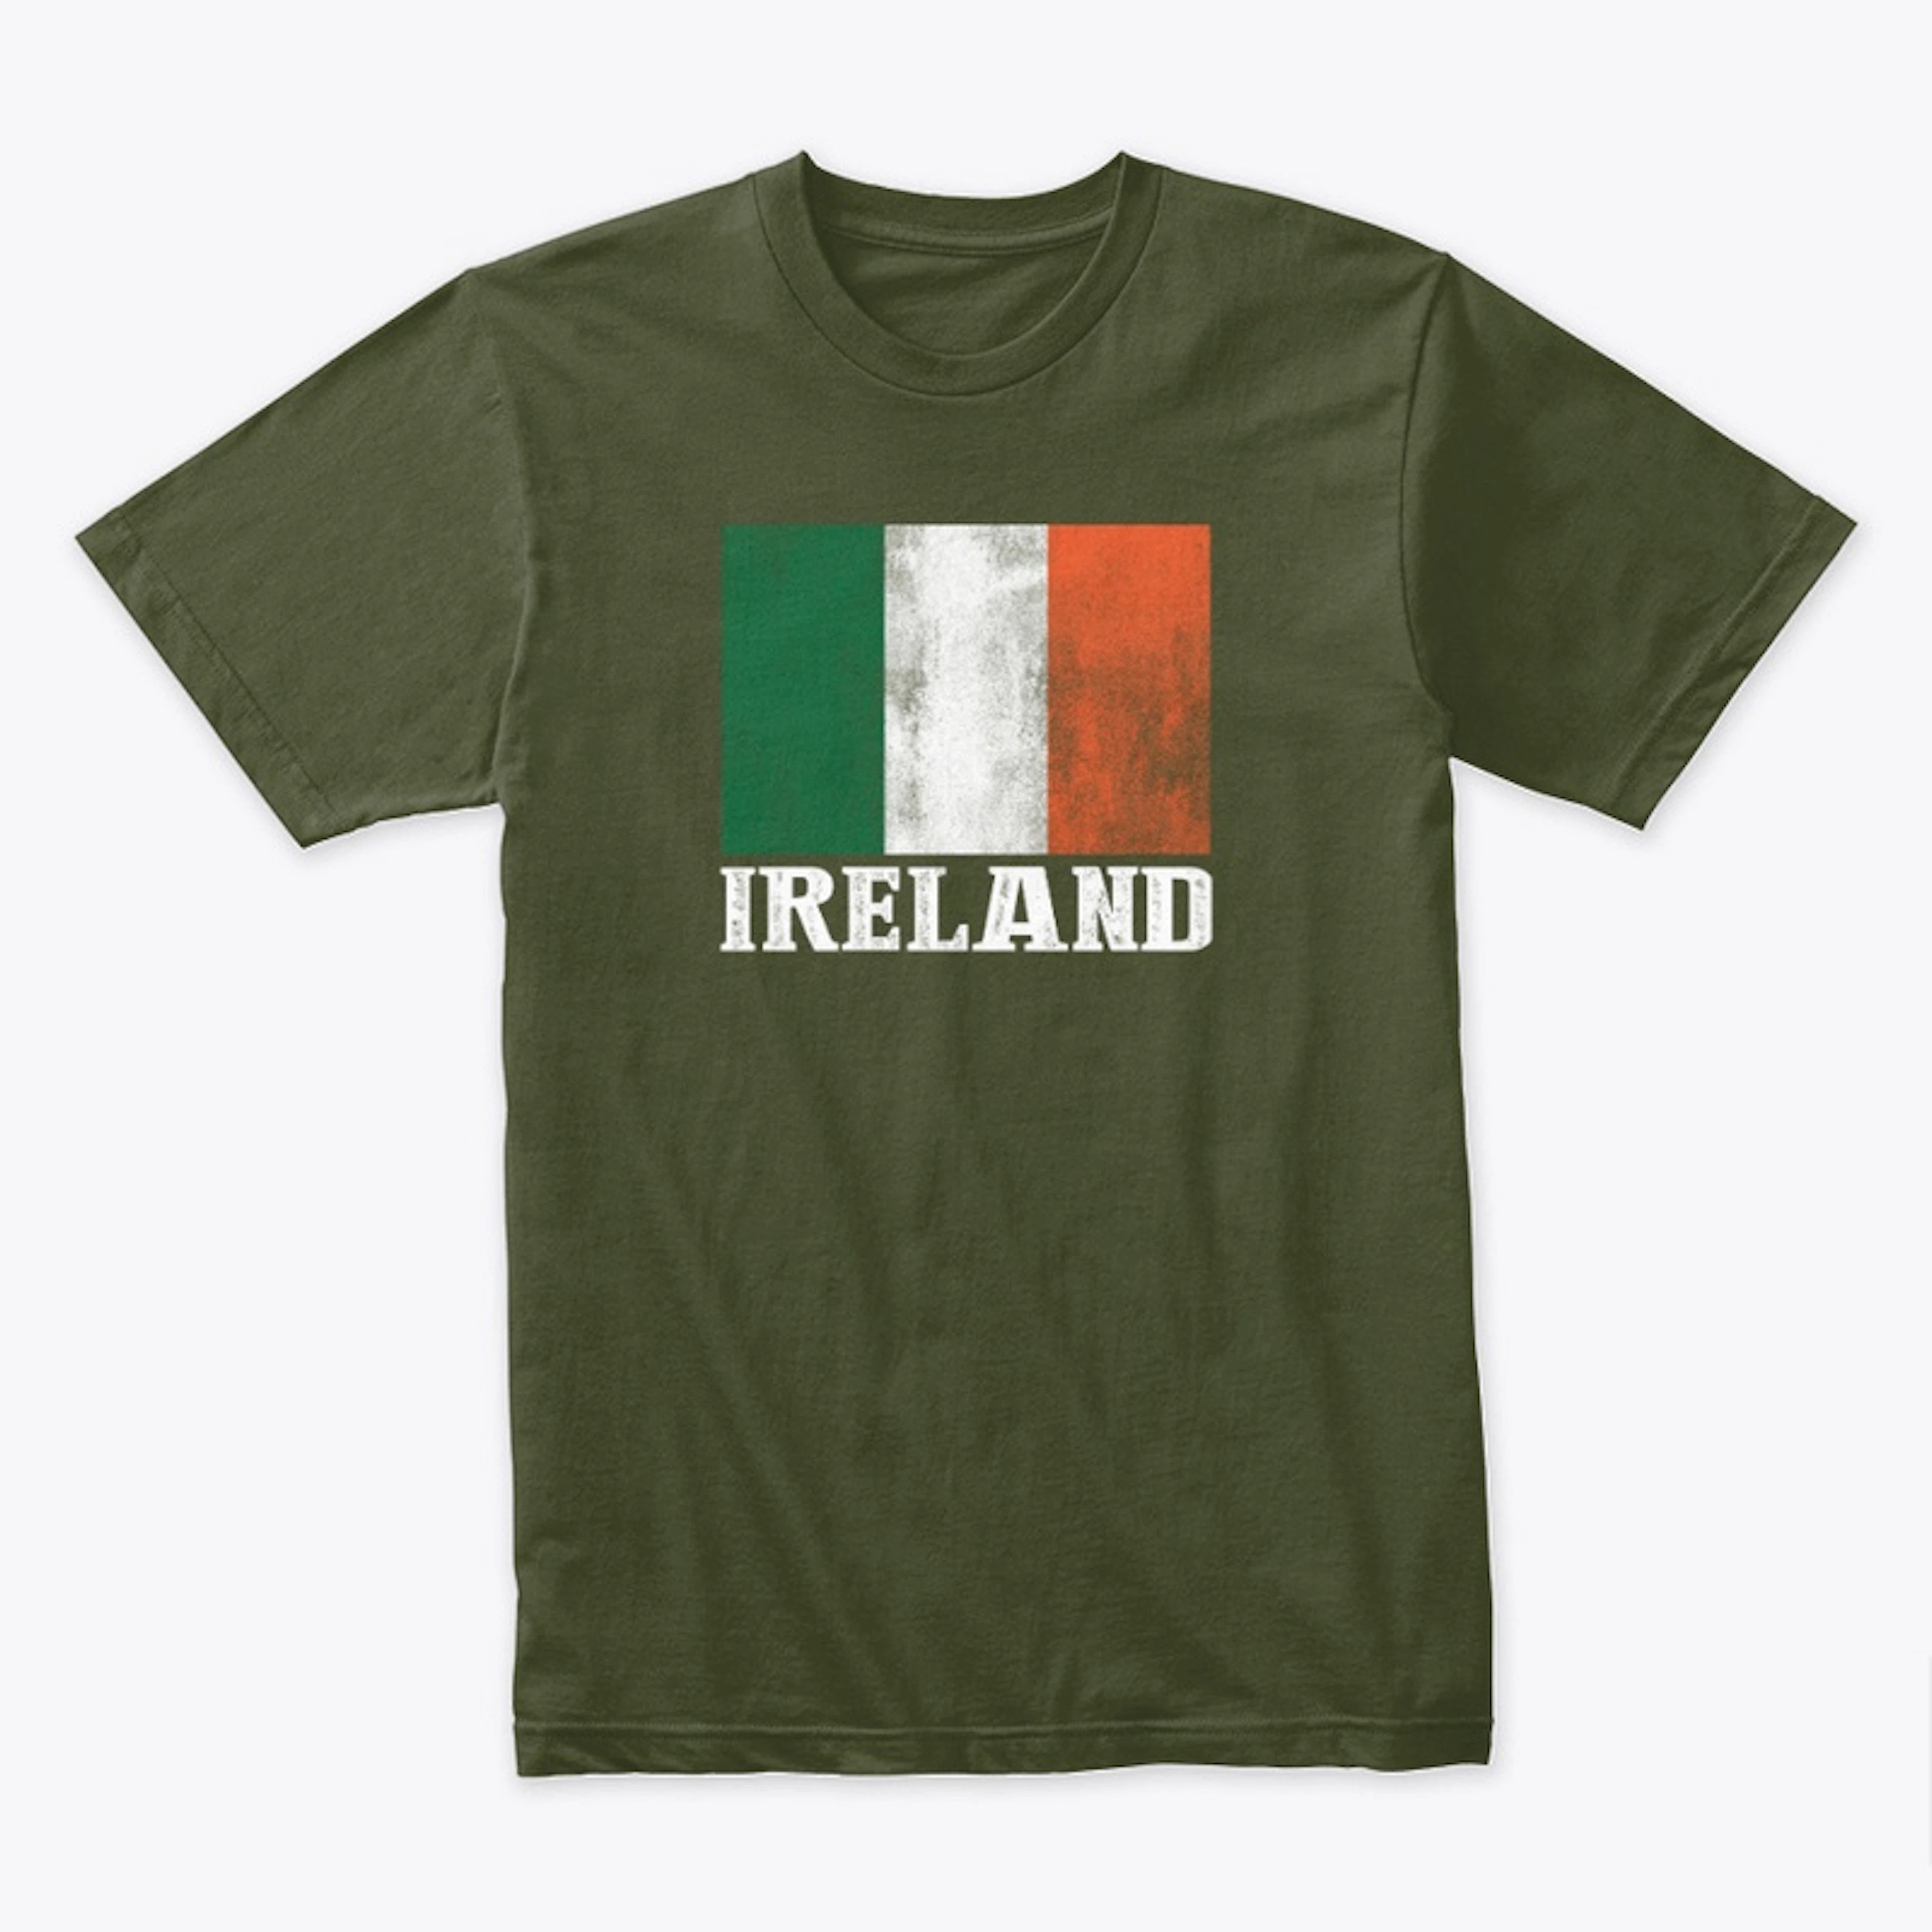 Ireland Tricolor Hoodie/Tee